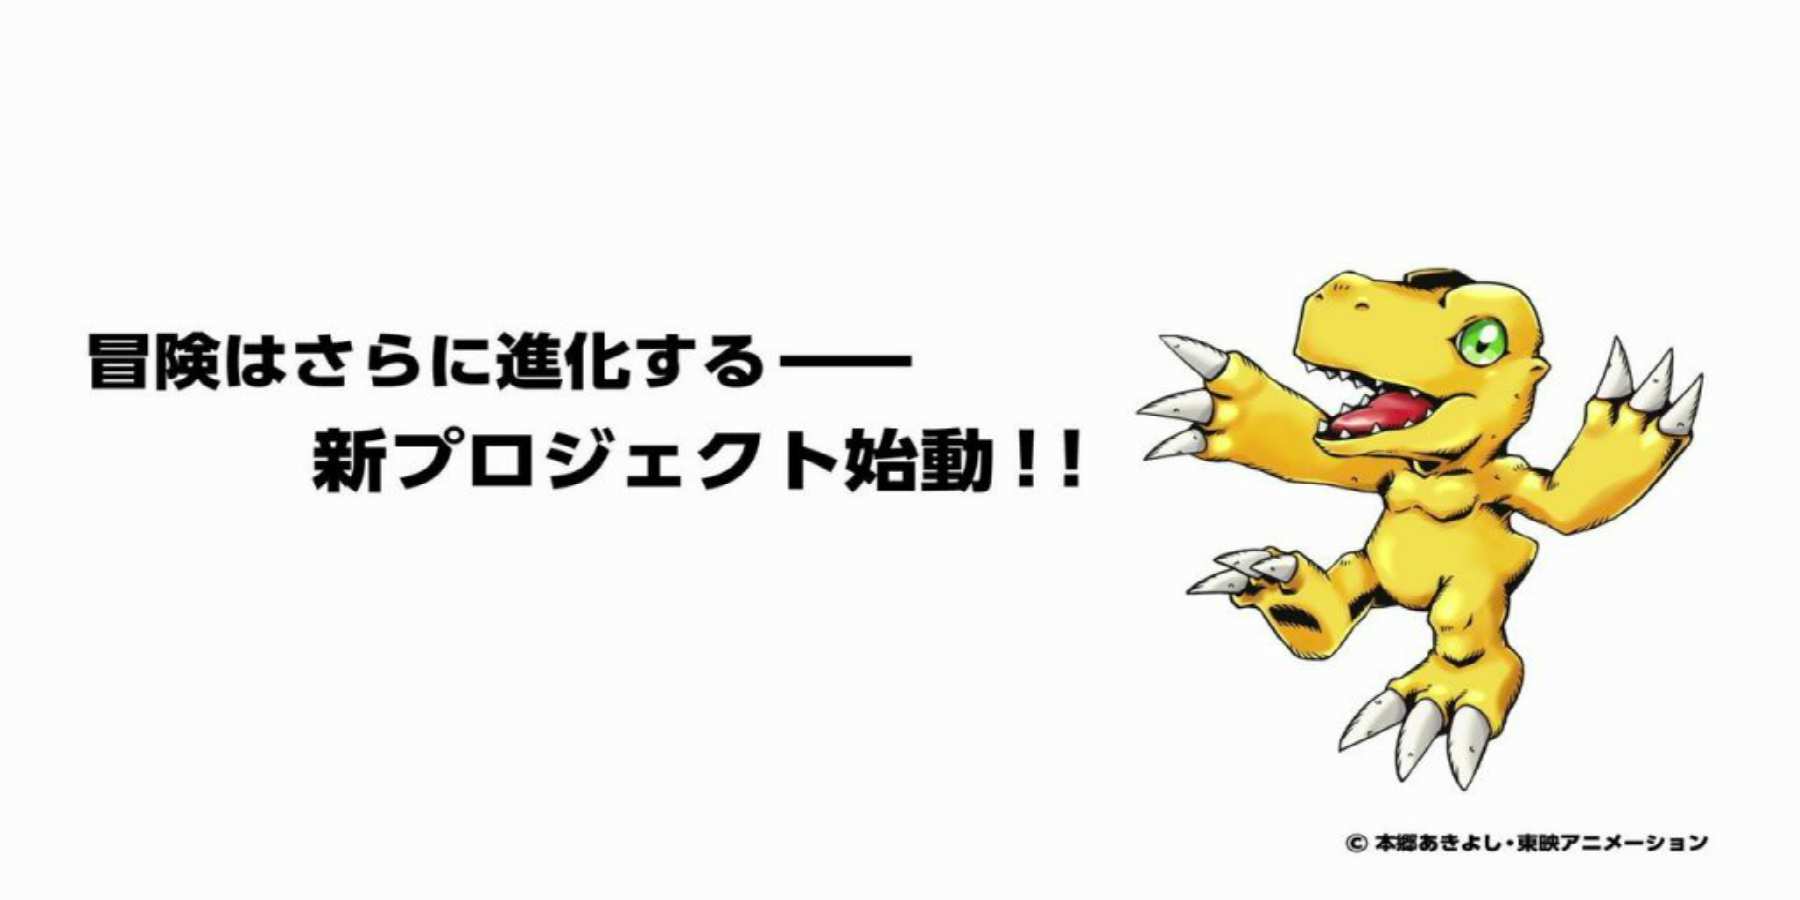 Digimon tendrá un nuevo proyecto